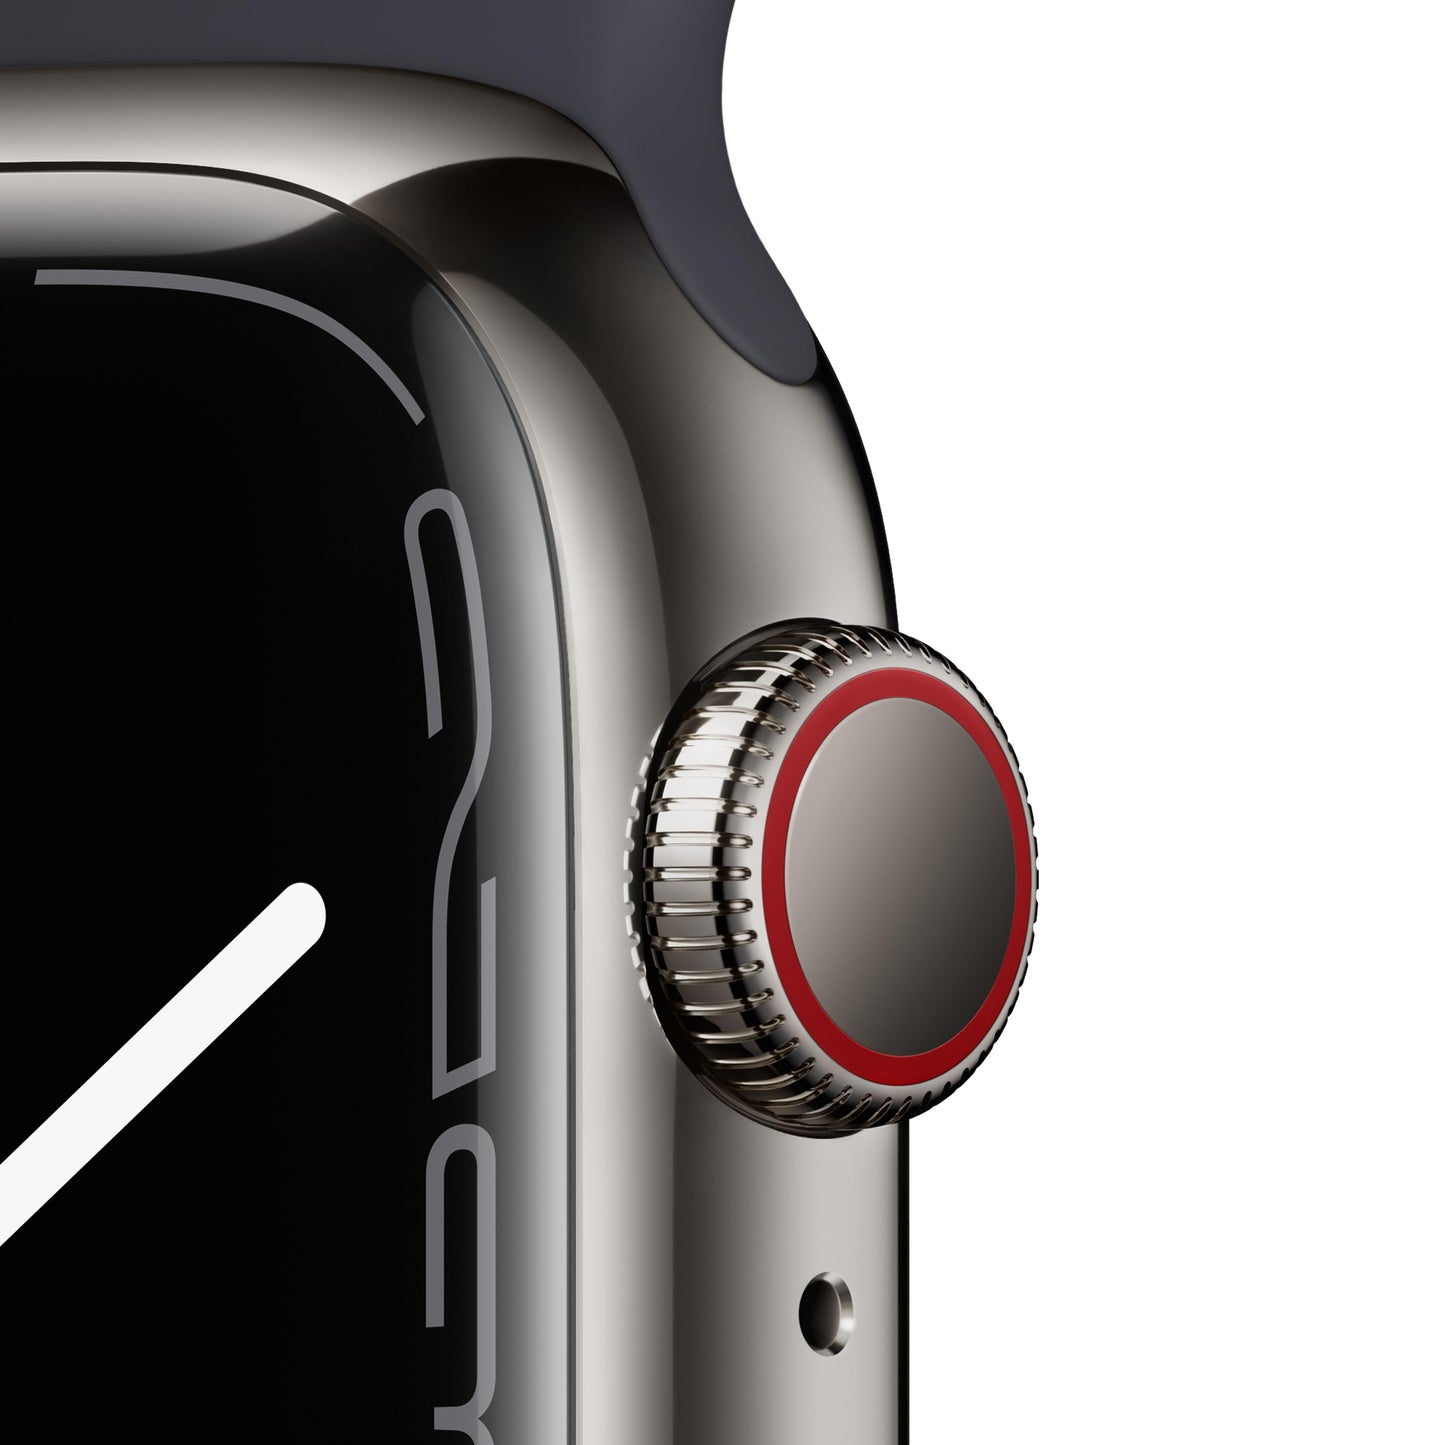 Apple Watch Series 7 (GPS + Cellular) - Caja de acero inoxidable en grafito de 41 mm - Correa deportiva en color medianoche - Talla única